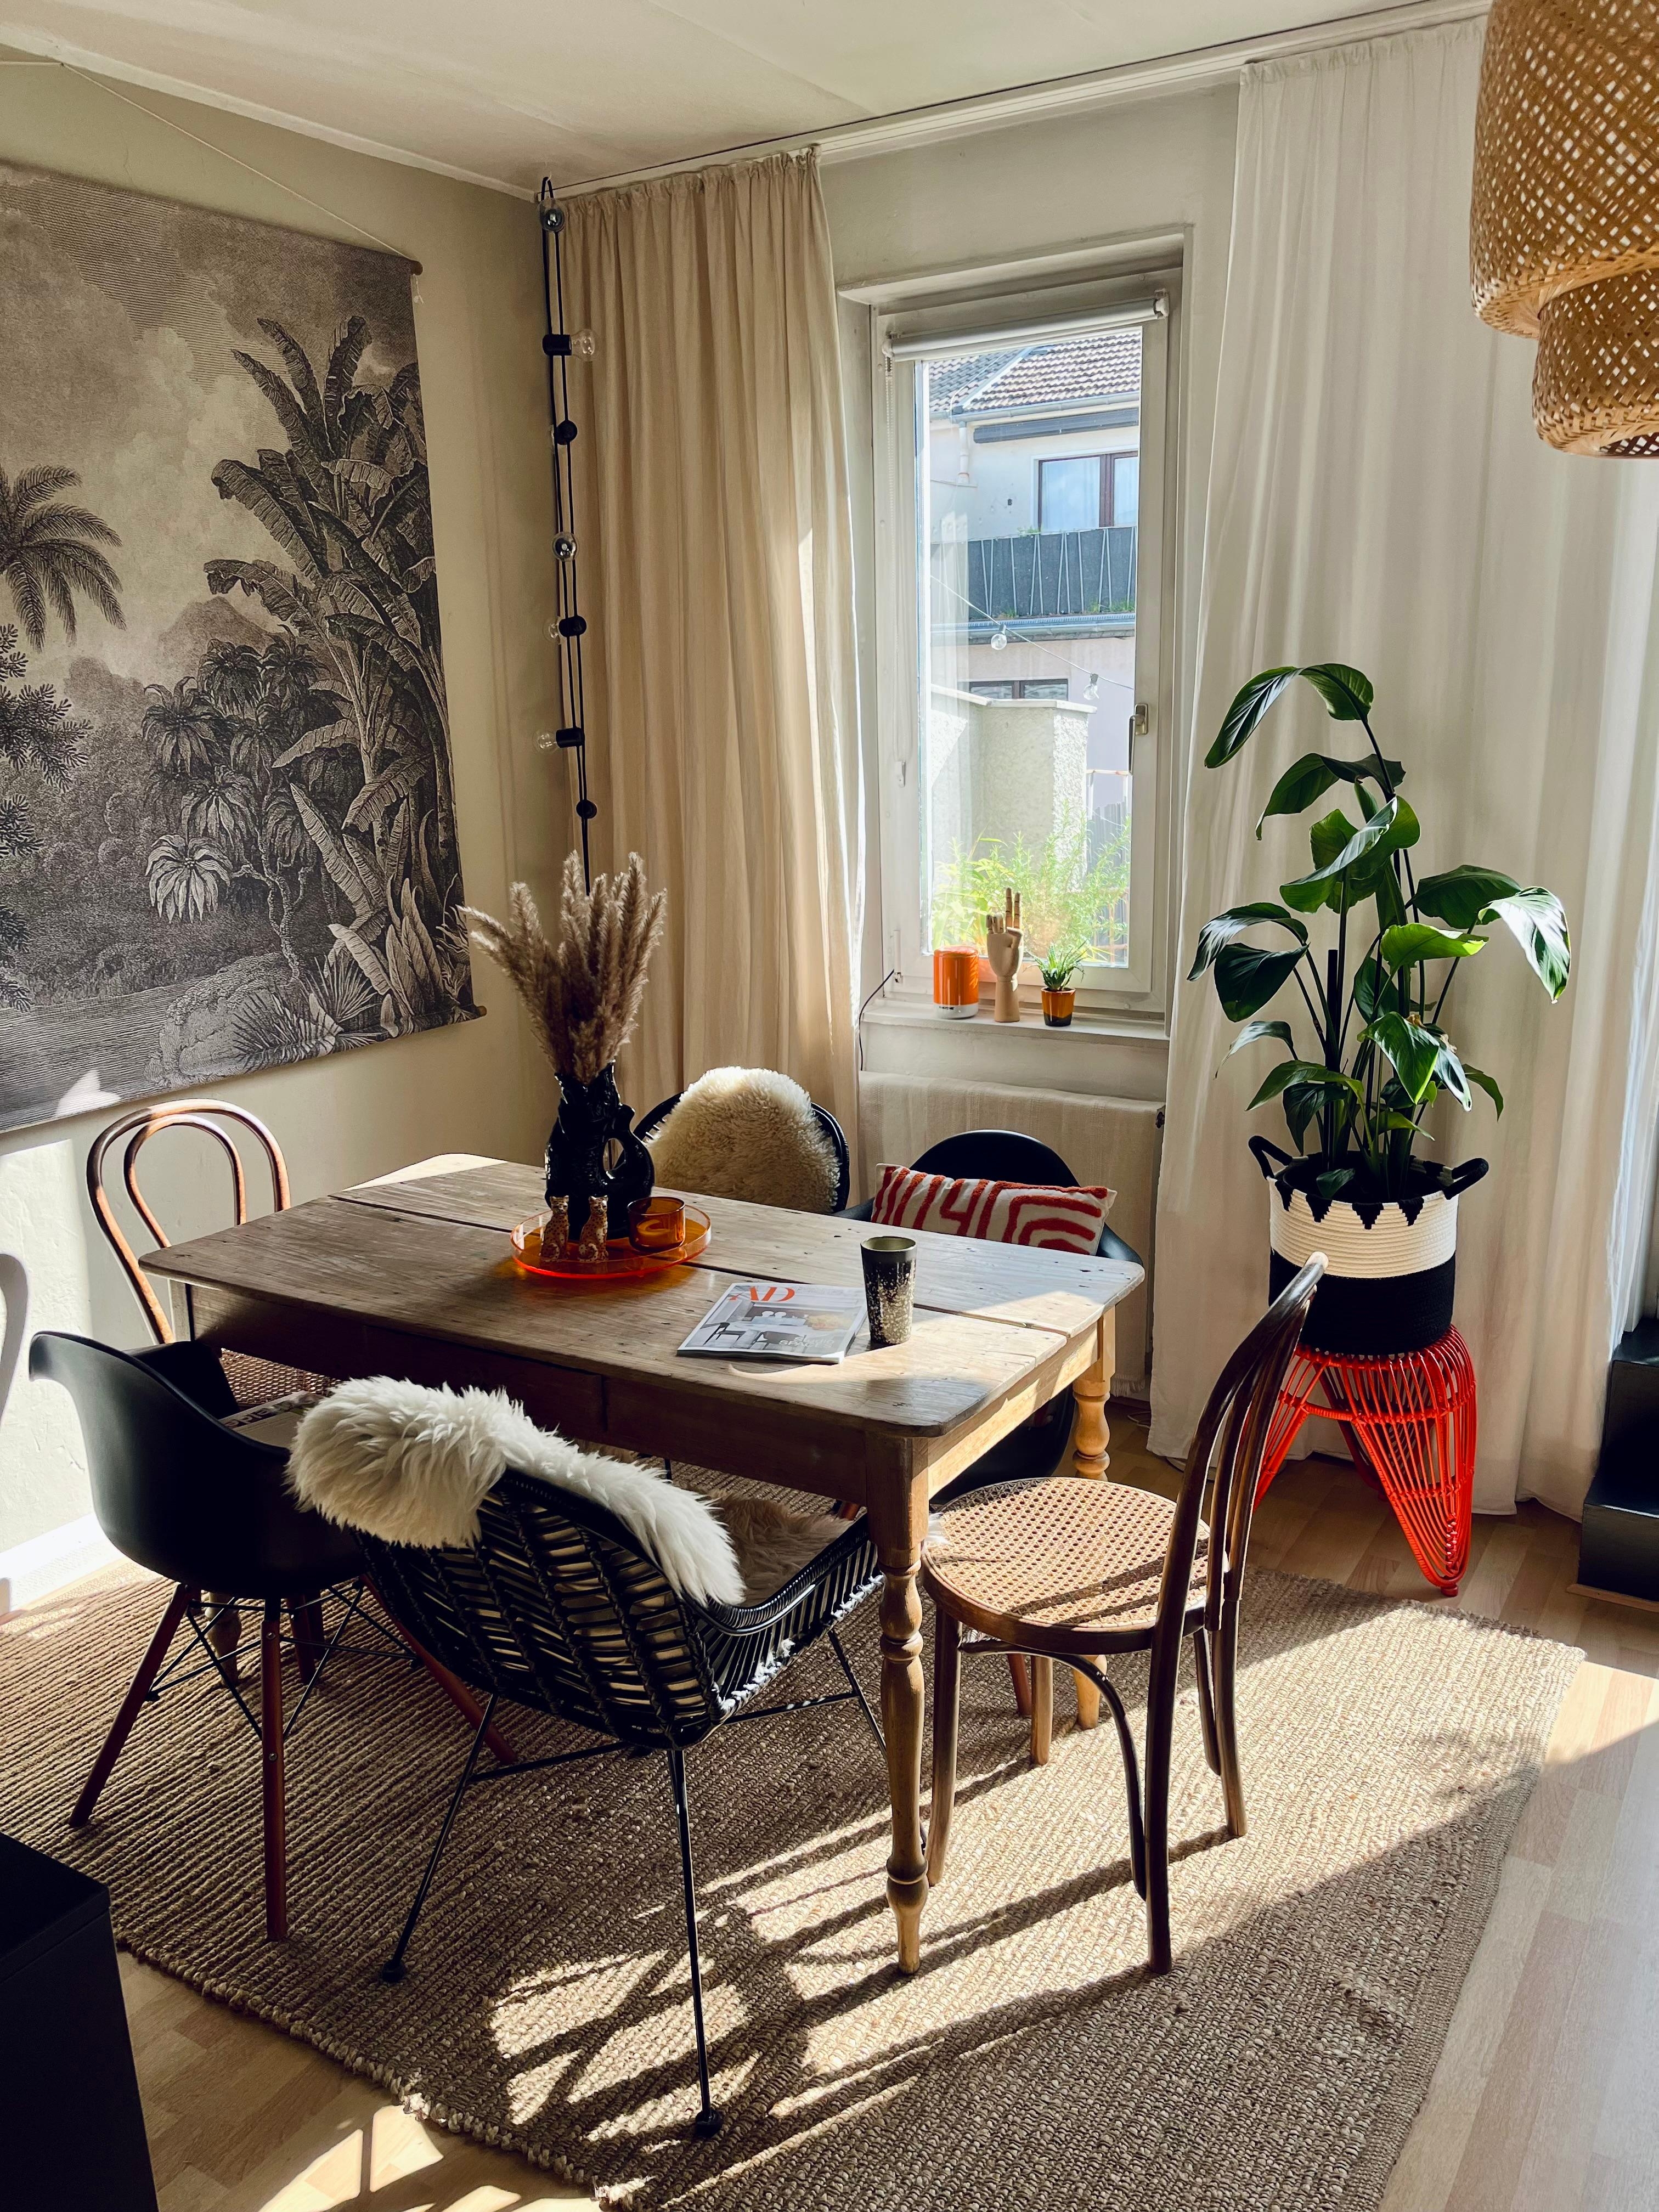 Lieblingstisch #livingroom #sunshine 